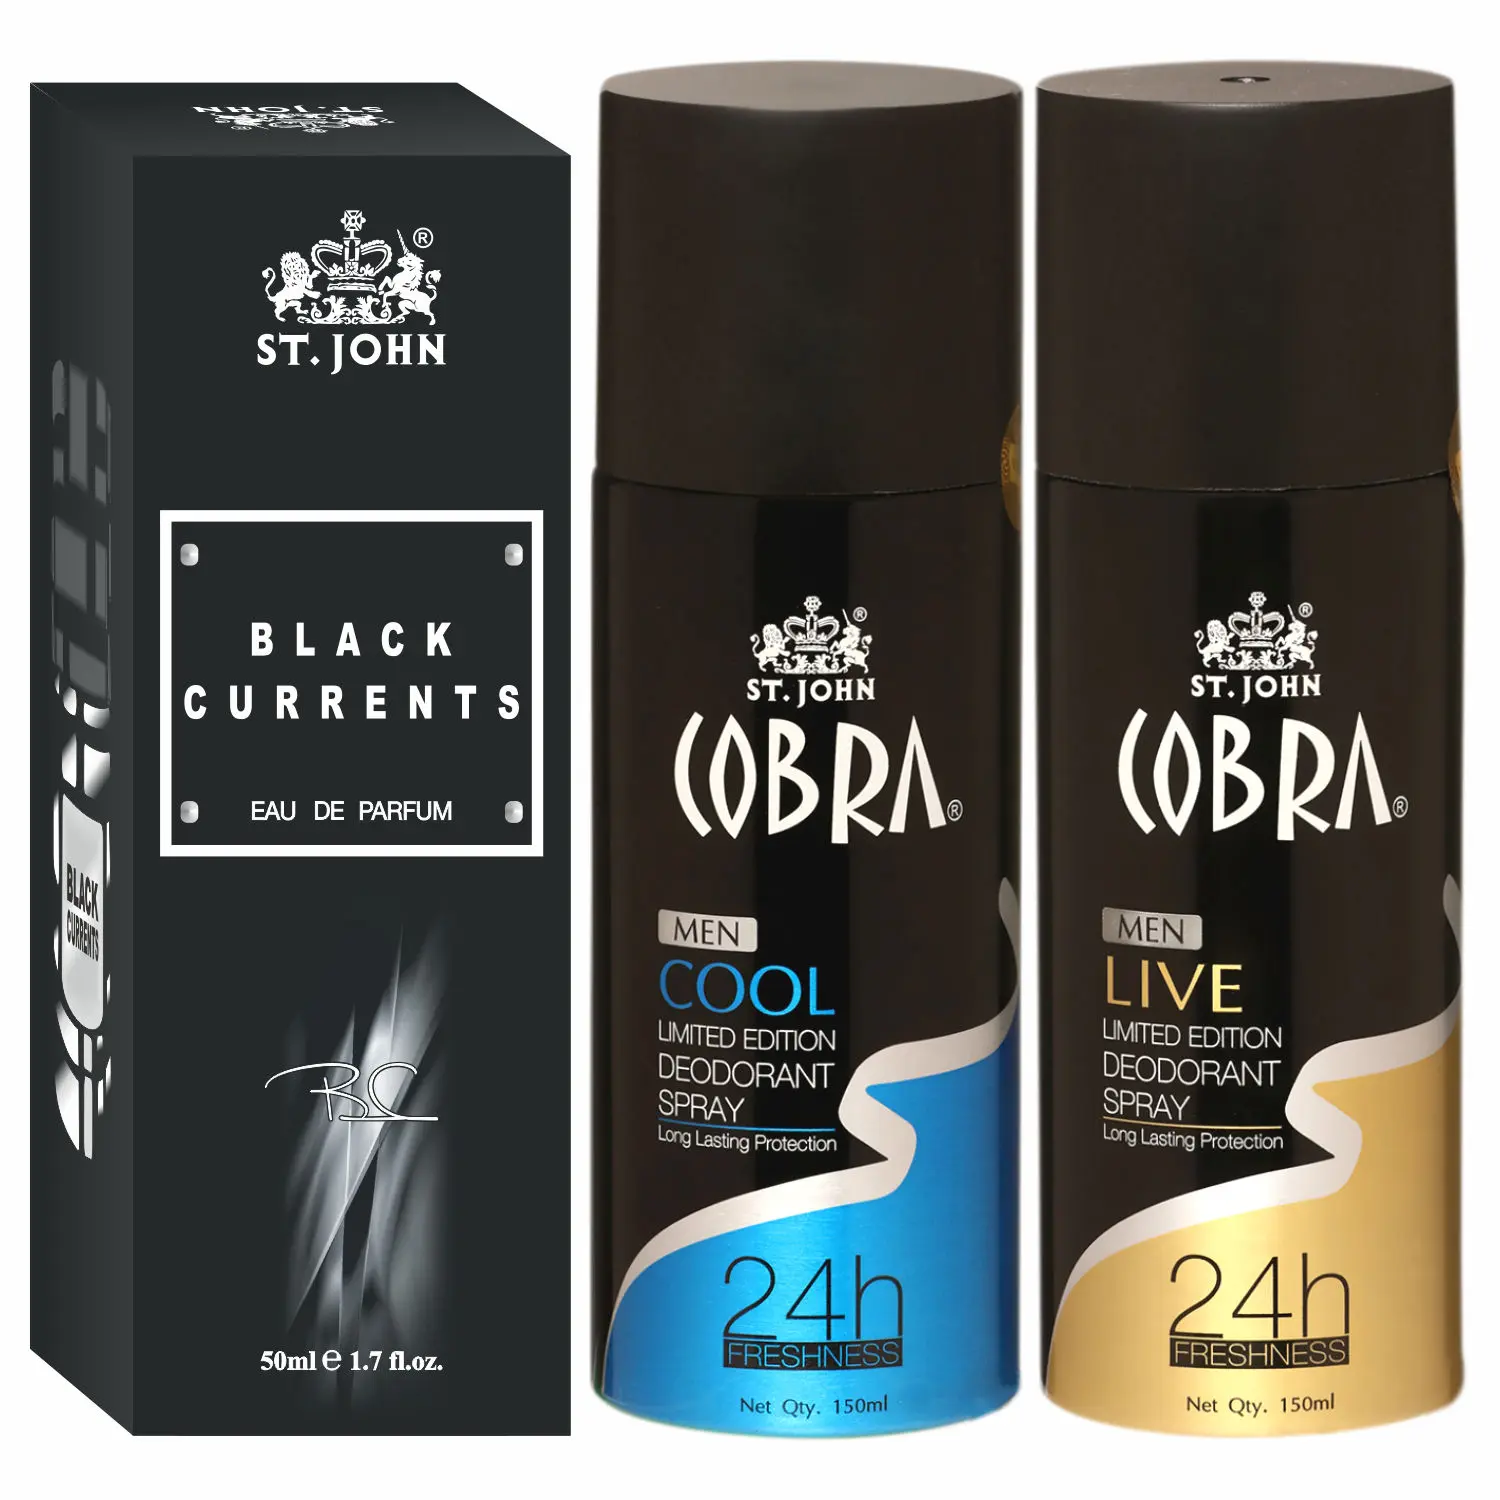 ST-JOHN Cobra Deodrant Cool & Live 150 ml each & Black Current 50ml Perfume Combo Pack Perfume Body Spray - For Men & Women (350 ml, Pack of 3)